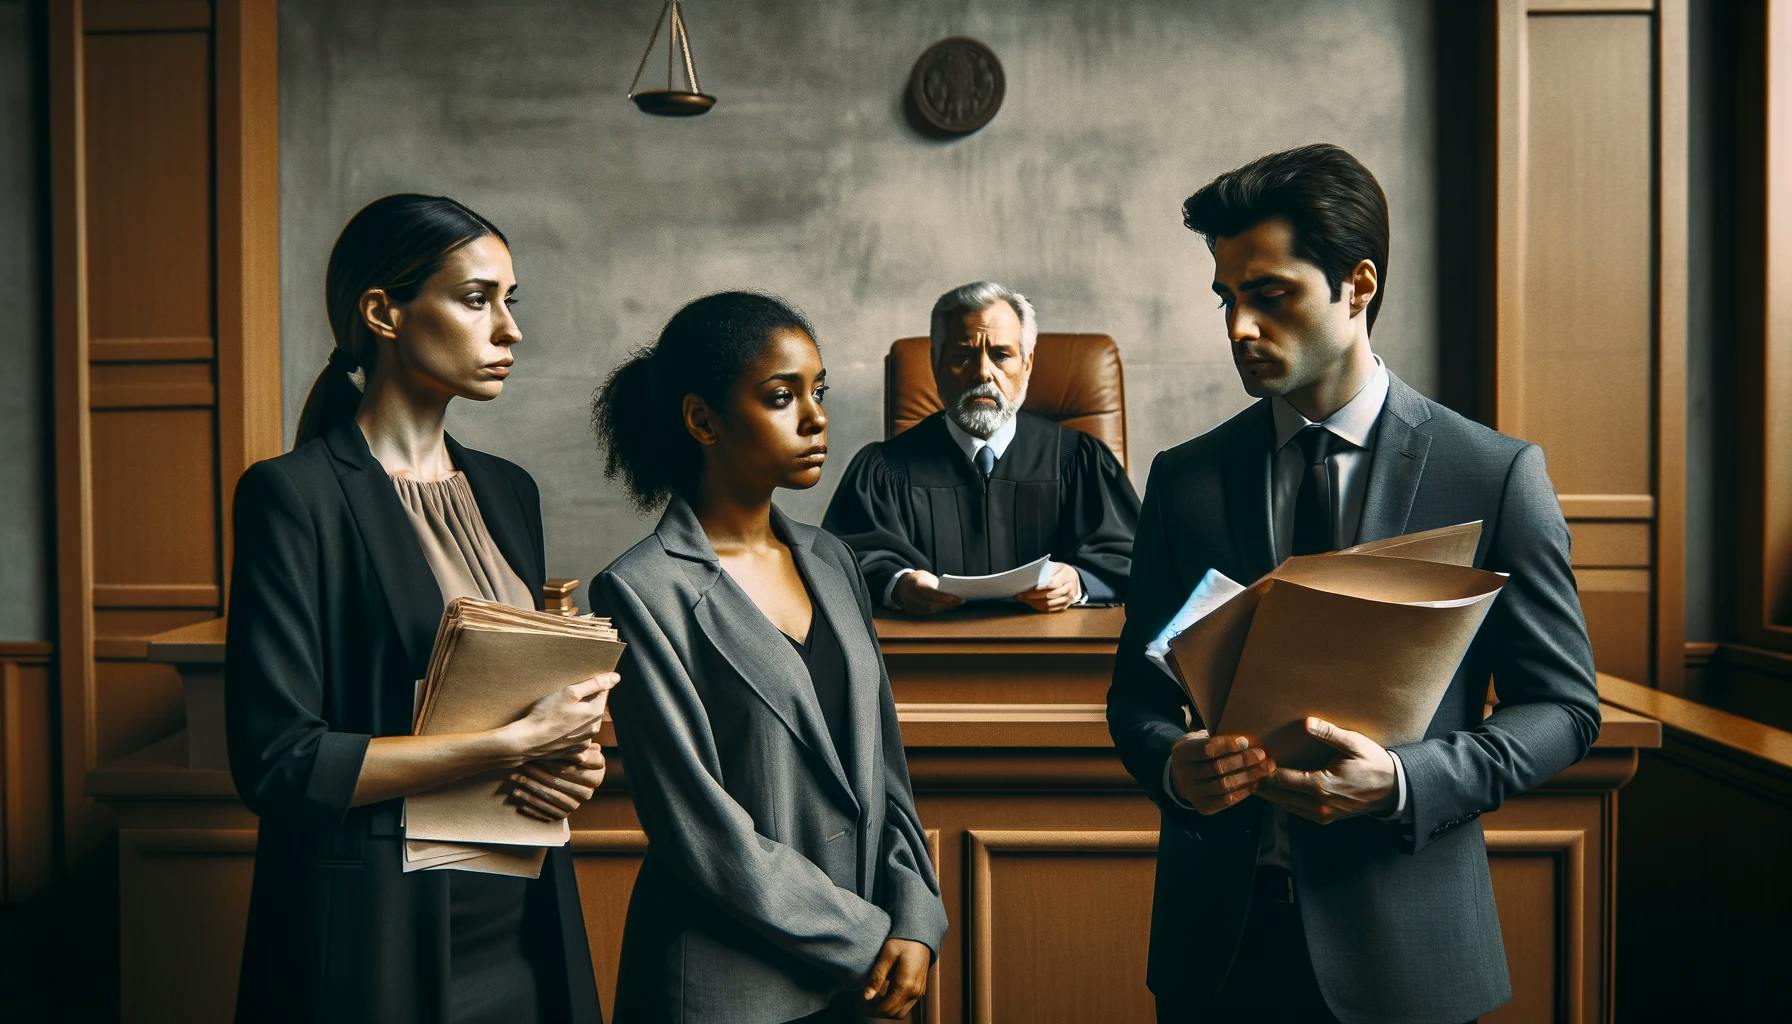 Scena razvoda u sudnici sa sudijom i advokatima različitog porekla.